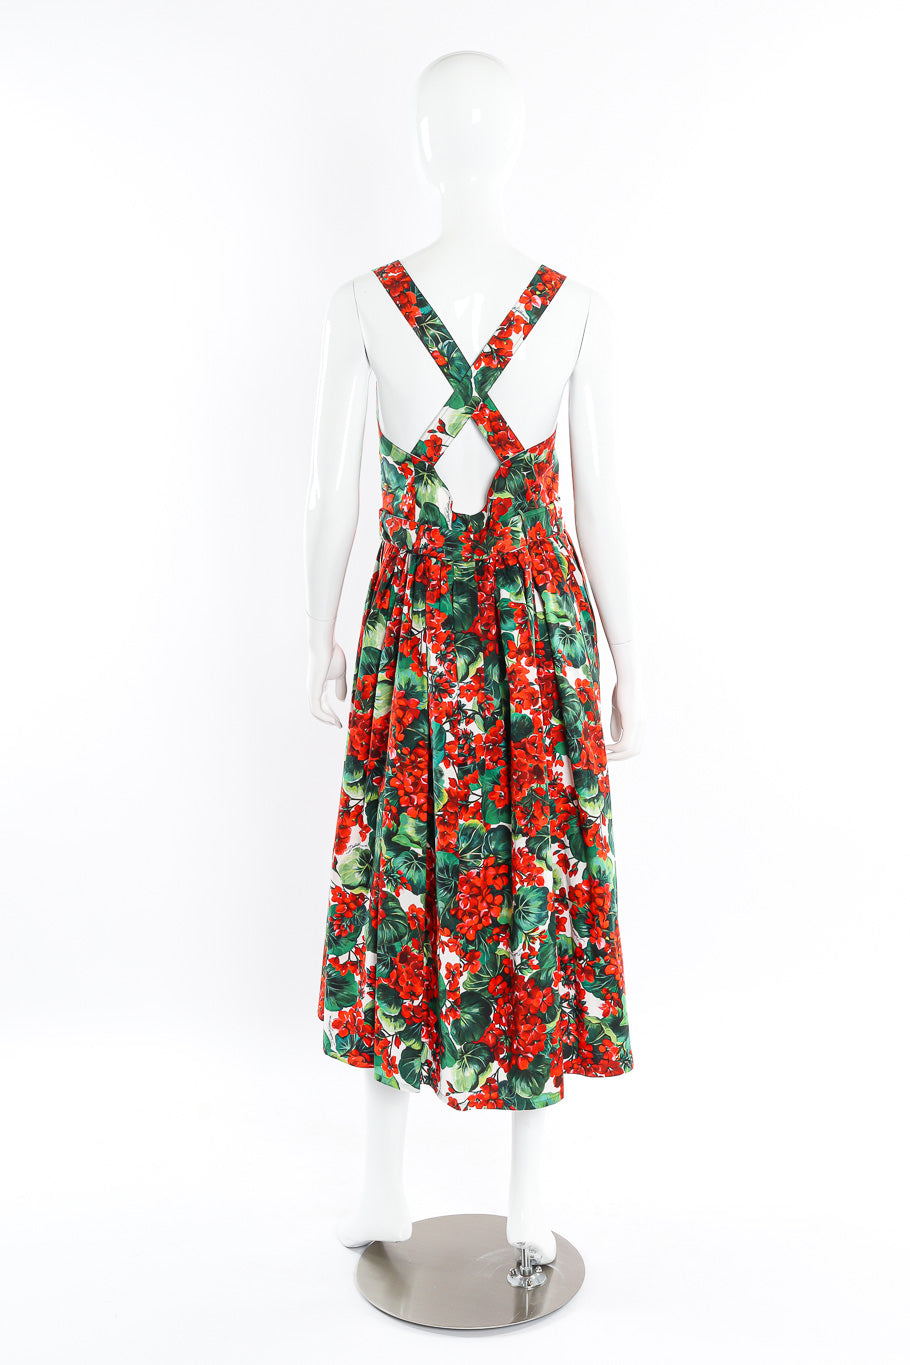 Dolce and Gabbana Floral Leaf Cotton Dress back mannequin @recessla